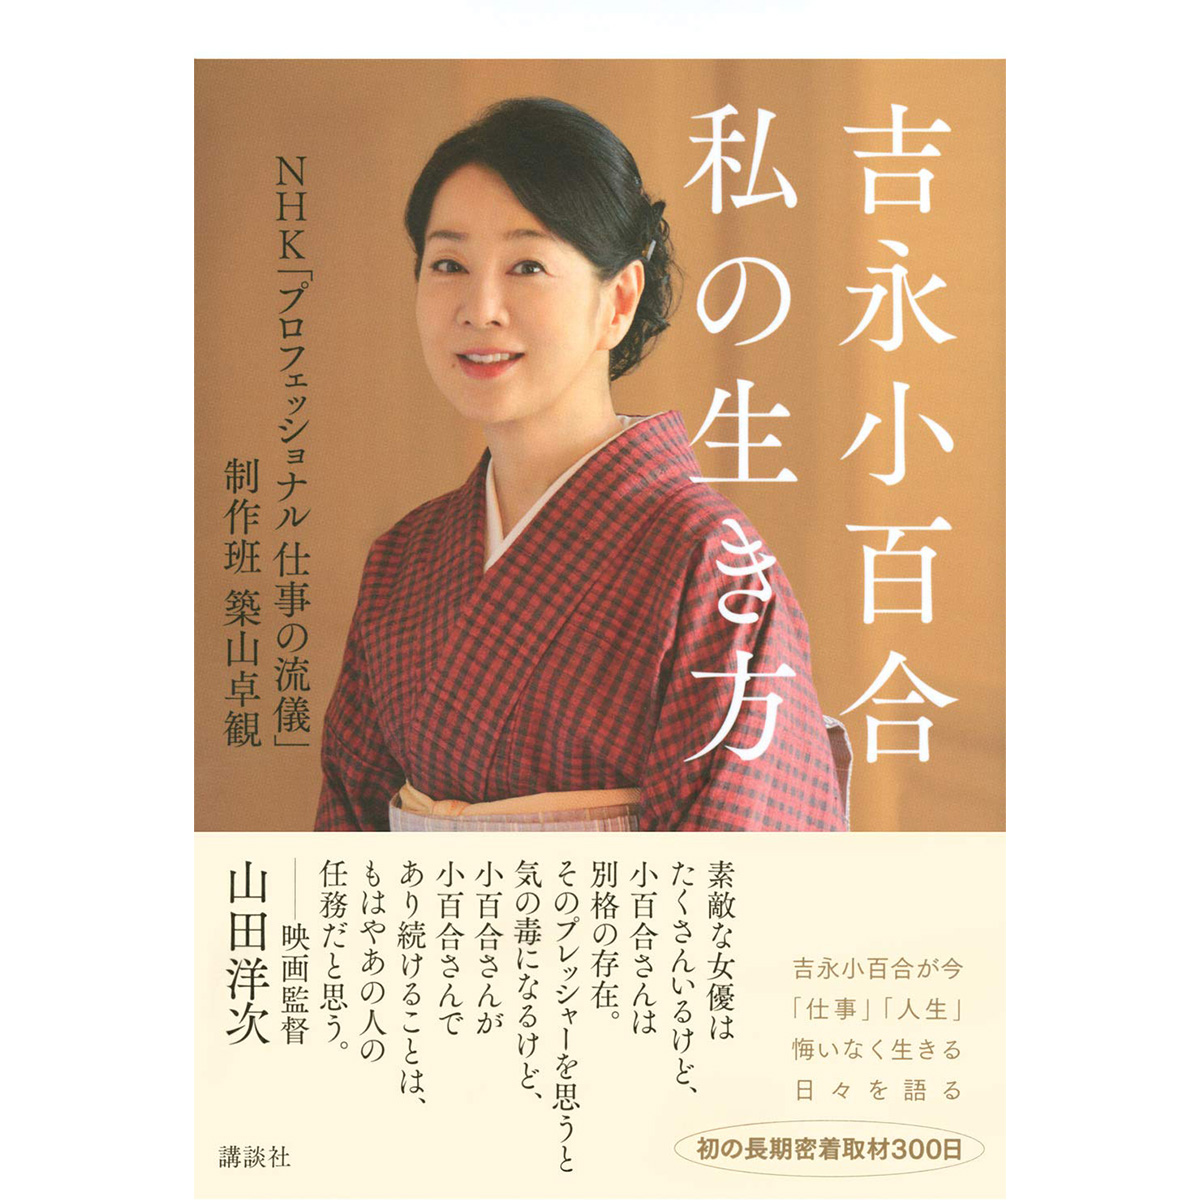 0614 女性タレント 吉永小百合 NISSAY 国民年金基金 - プリペイドカード